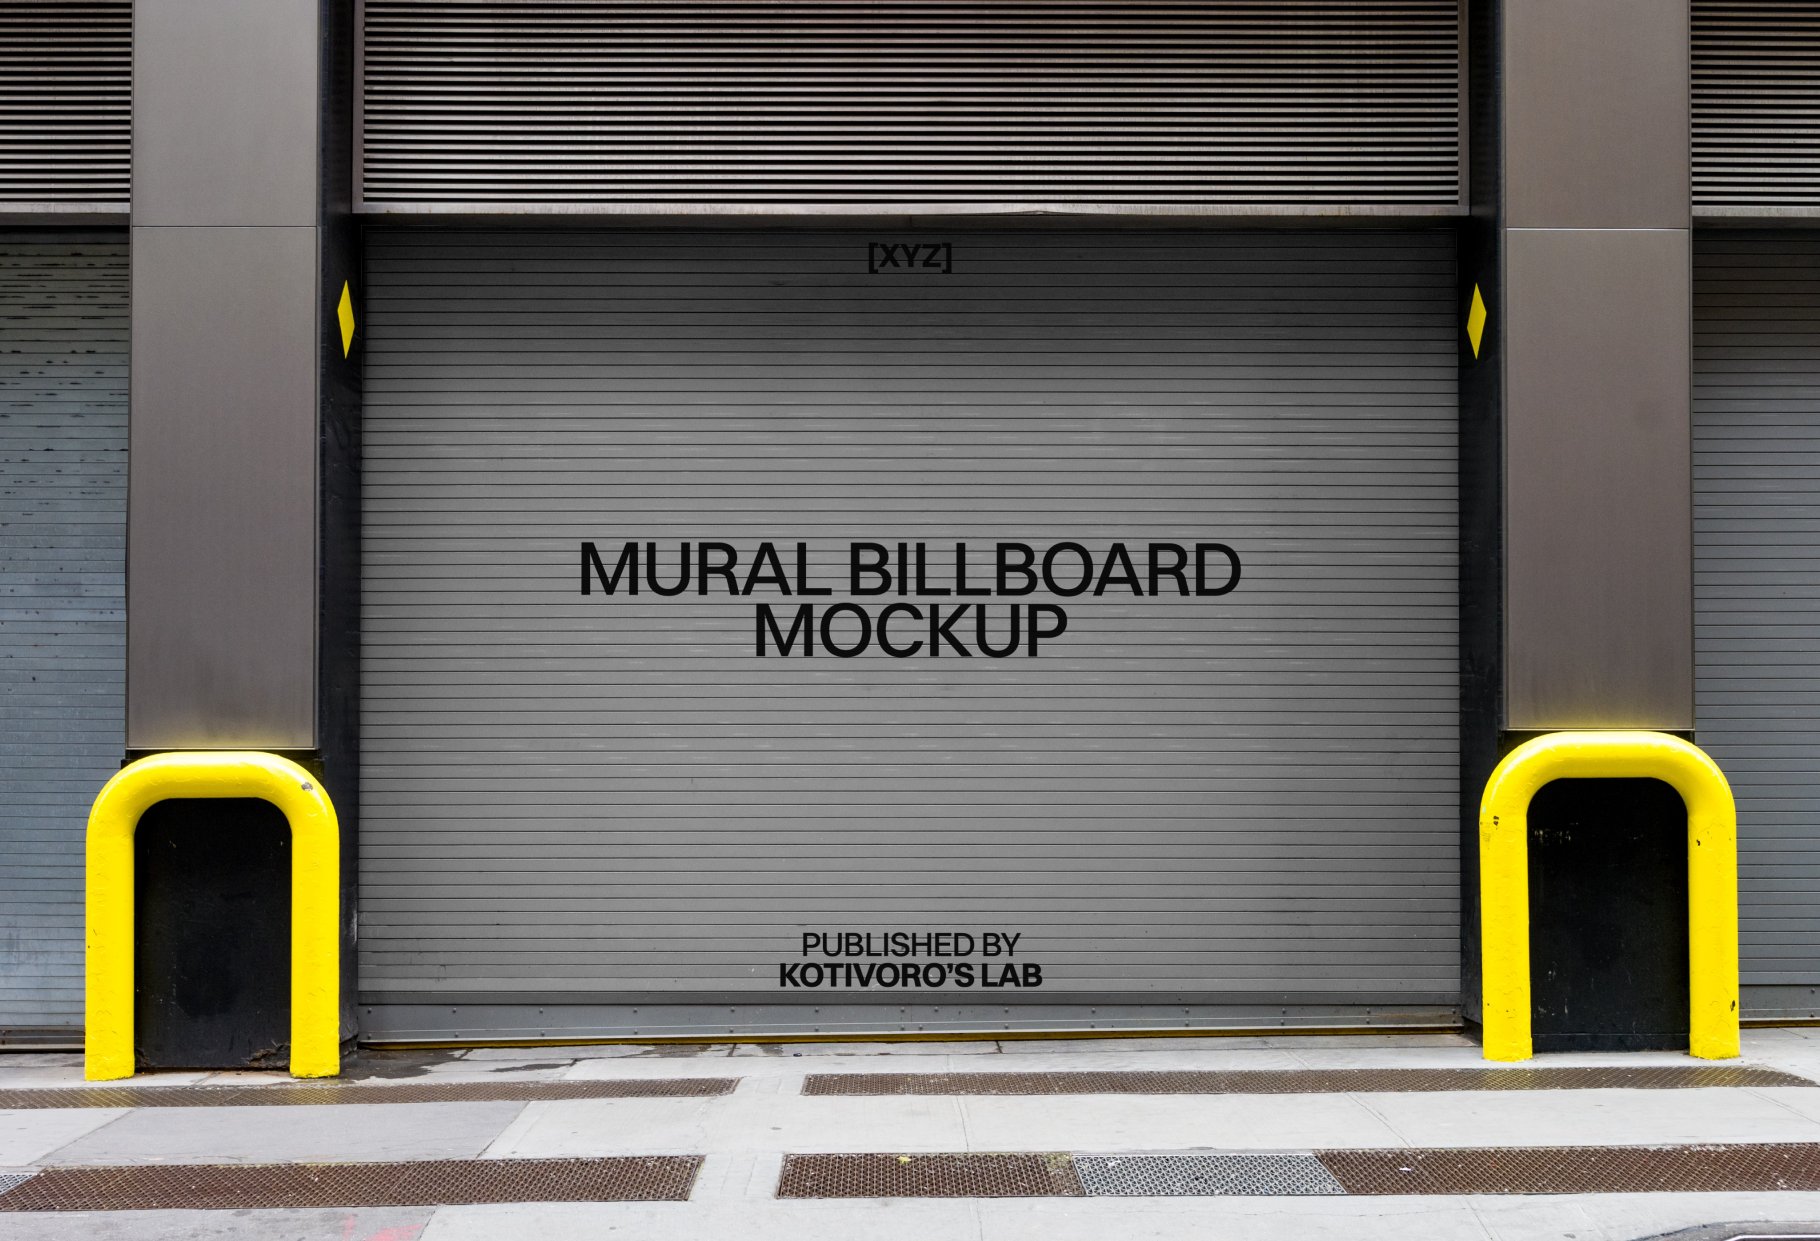 Urban Mural Billboard Mockup 09 cover image.